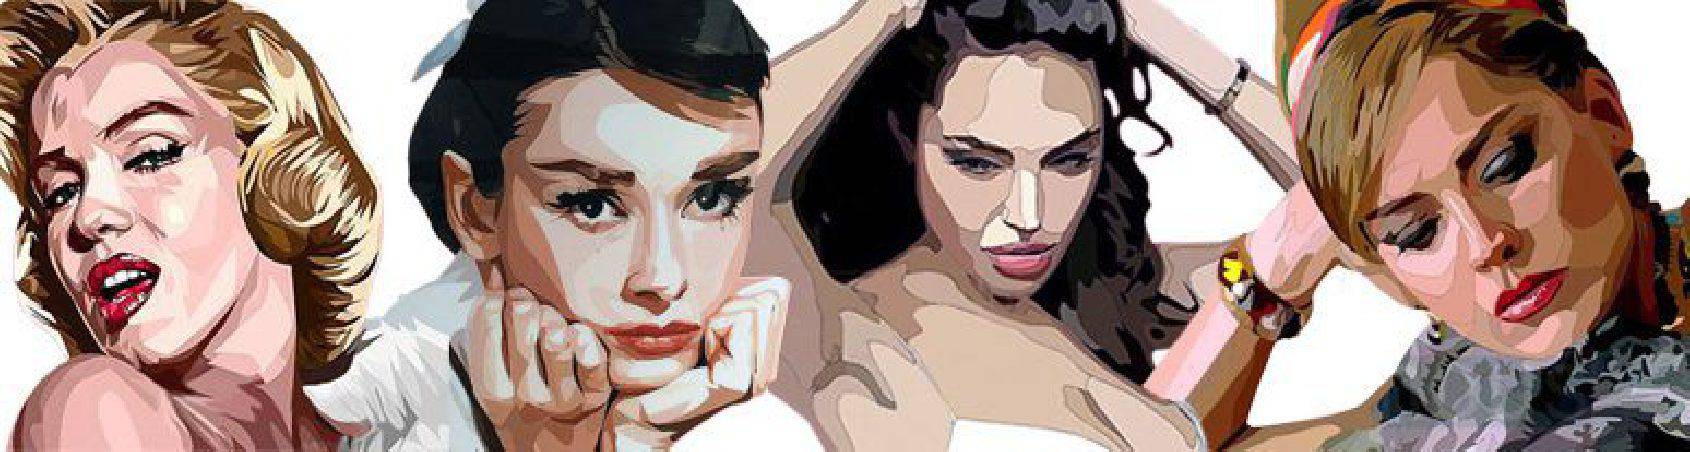 Peintures style Pop-Art - images et compositions d'actrices-à acheter